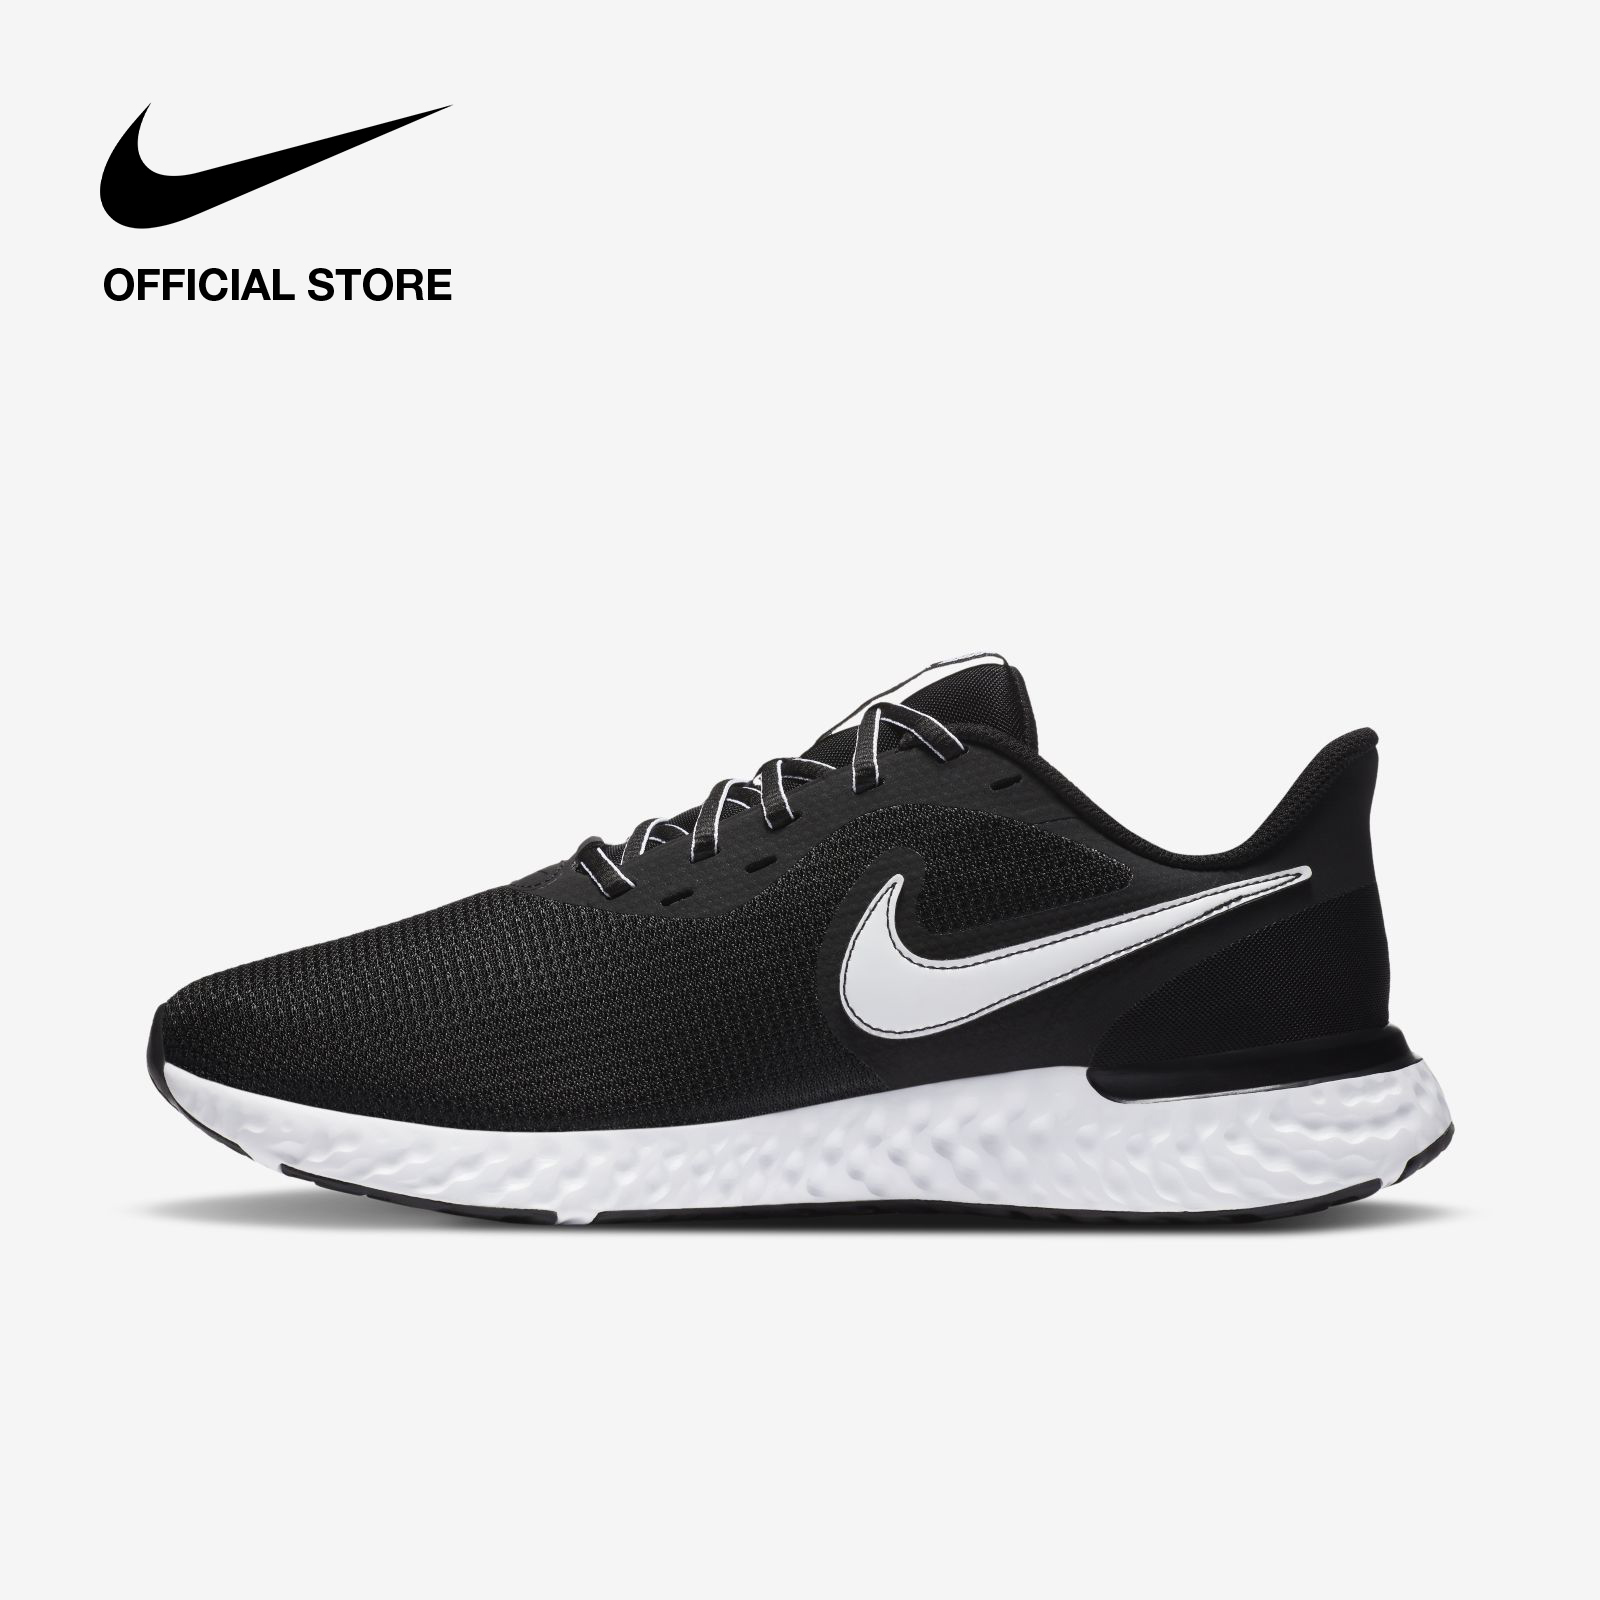 Nike Men's Revolution 5 EXT Running Shoes - Black ไนกี้ รองเท้าวิ่งผู้ชาย รีโวลูชั่น 5 อีเอ็กซ์ที - สีดำ